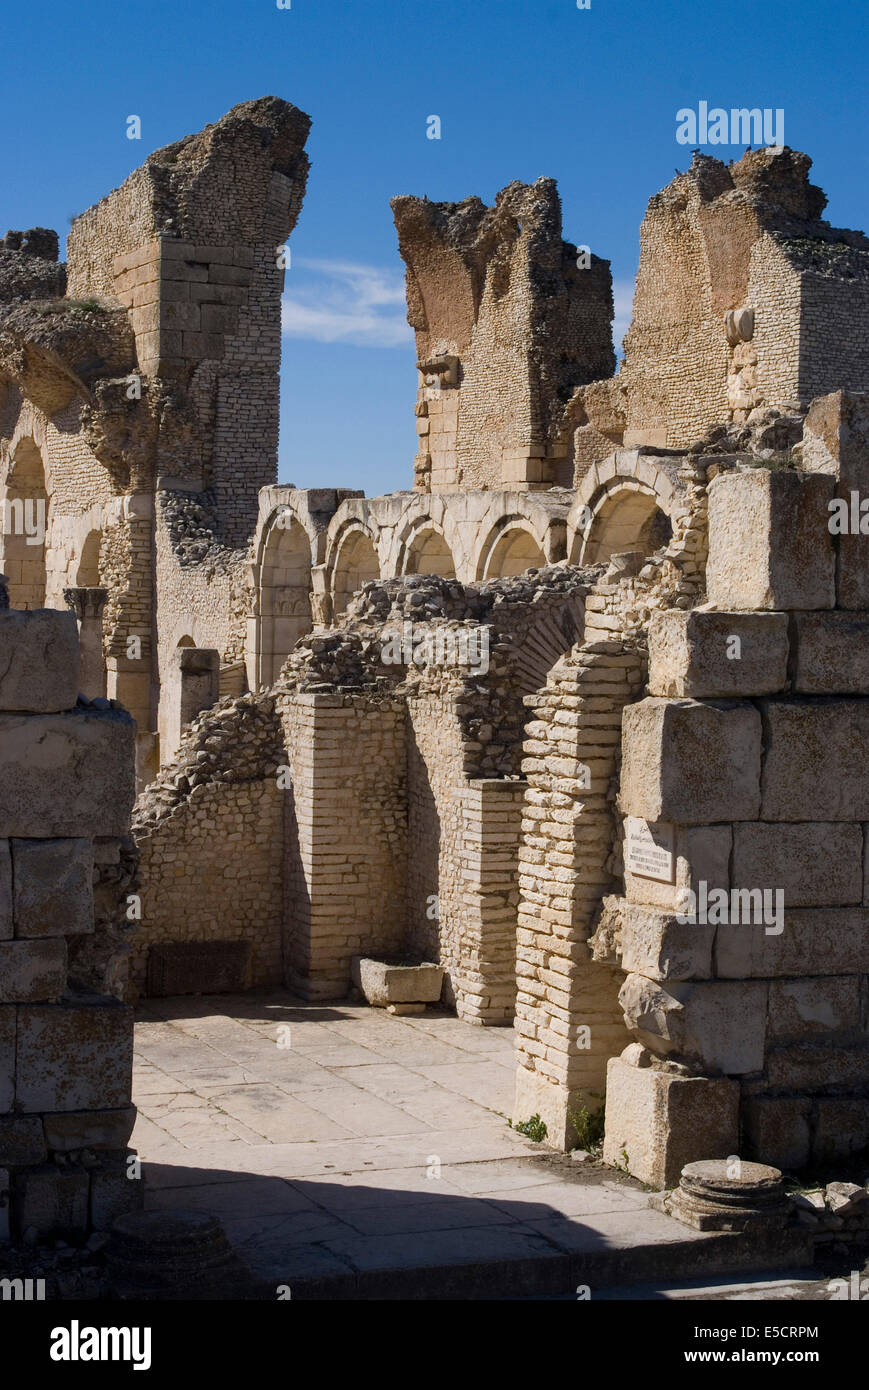 Bagni grandi, con successive fortificazioni di epoca bizantina, sito romano di Makhtar, Tunisia Foto Stock